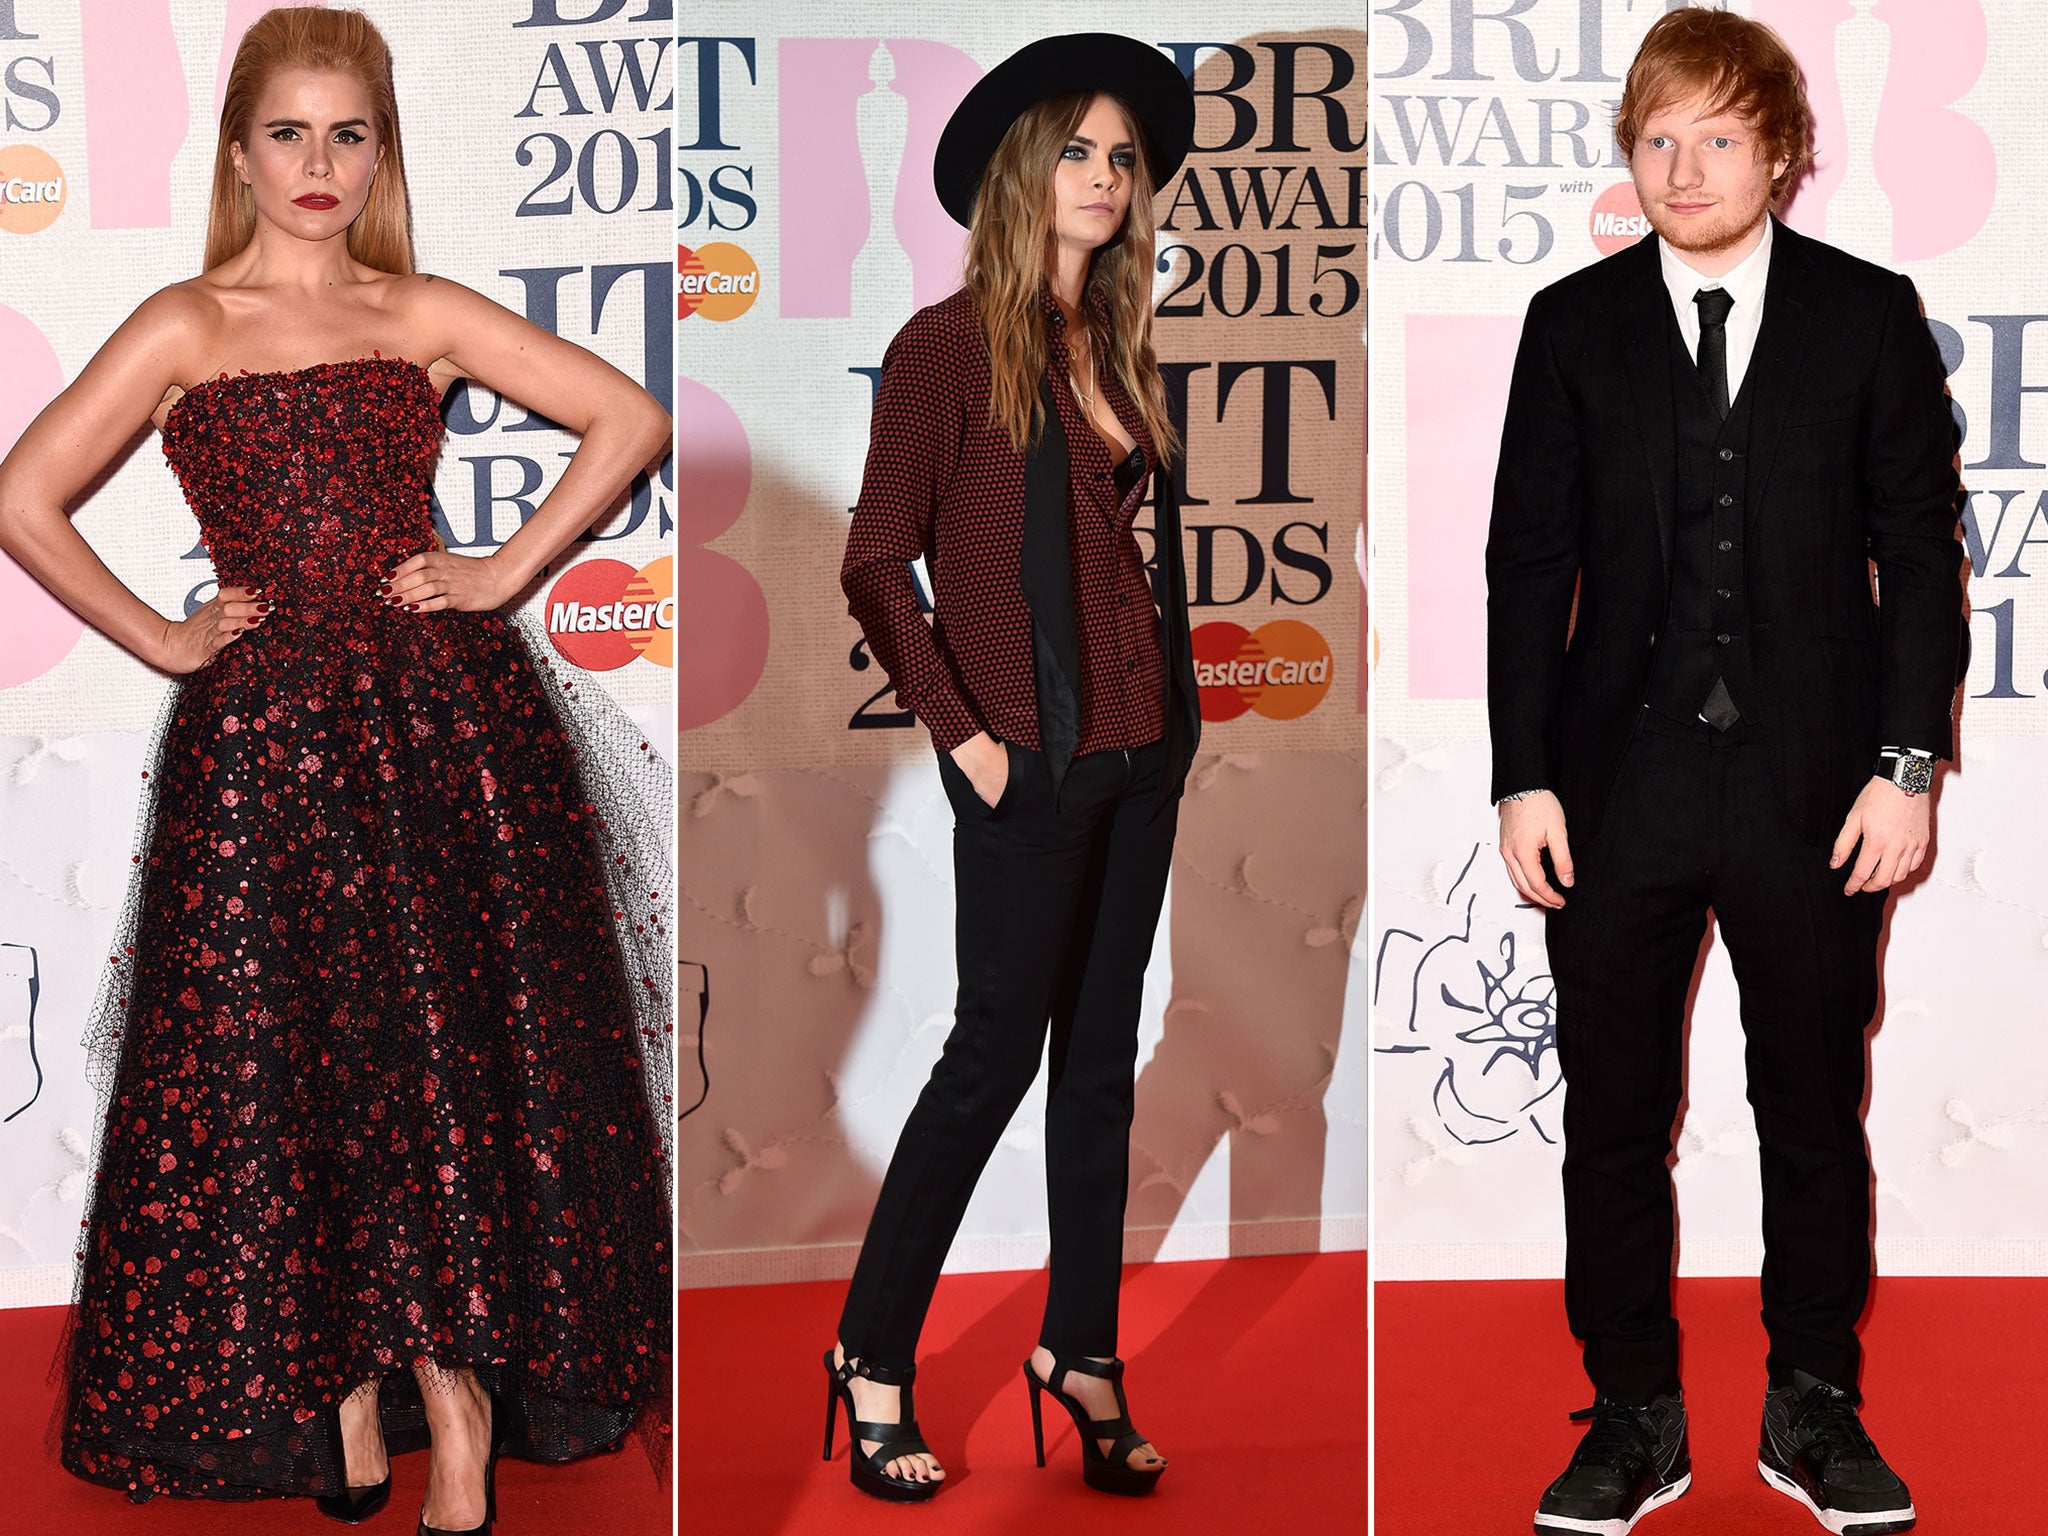 Paloma Faith, Cara Delevingne and Ed Sheeran at the Brit Awards 2015